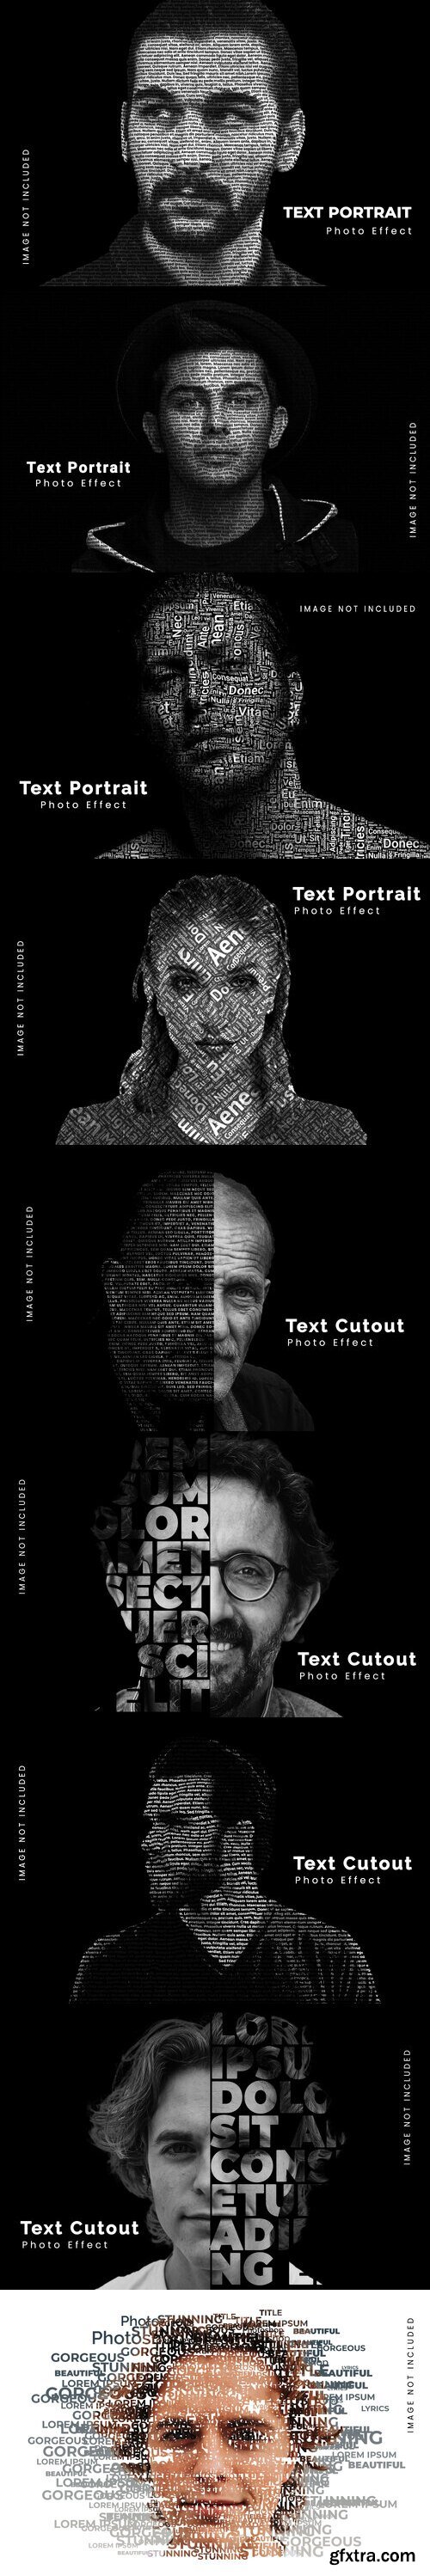 Artistic text cutout portrait photo effect